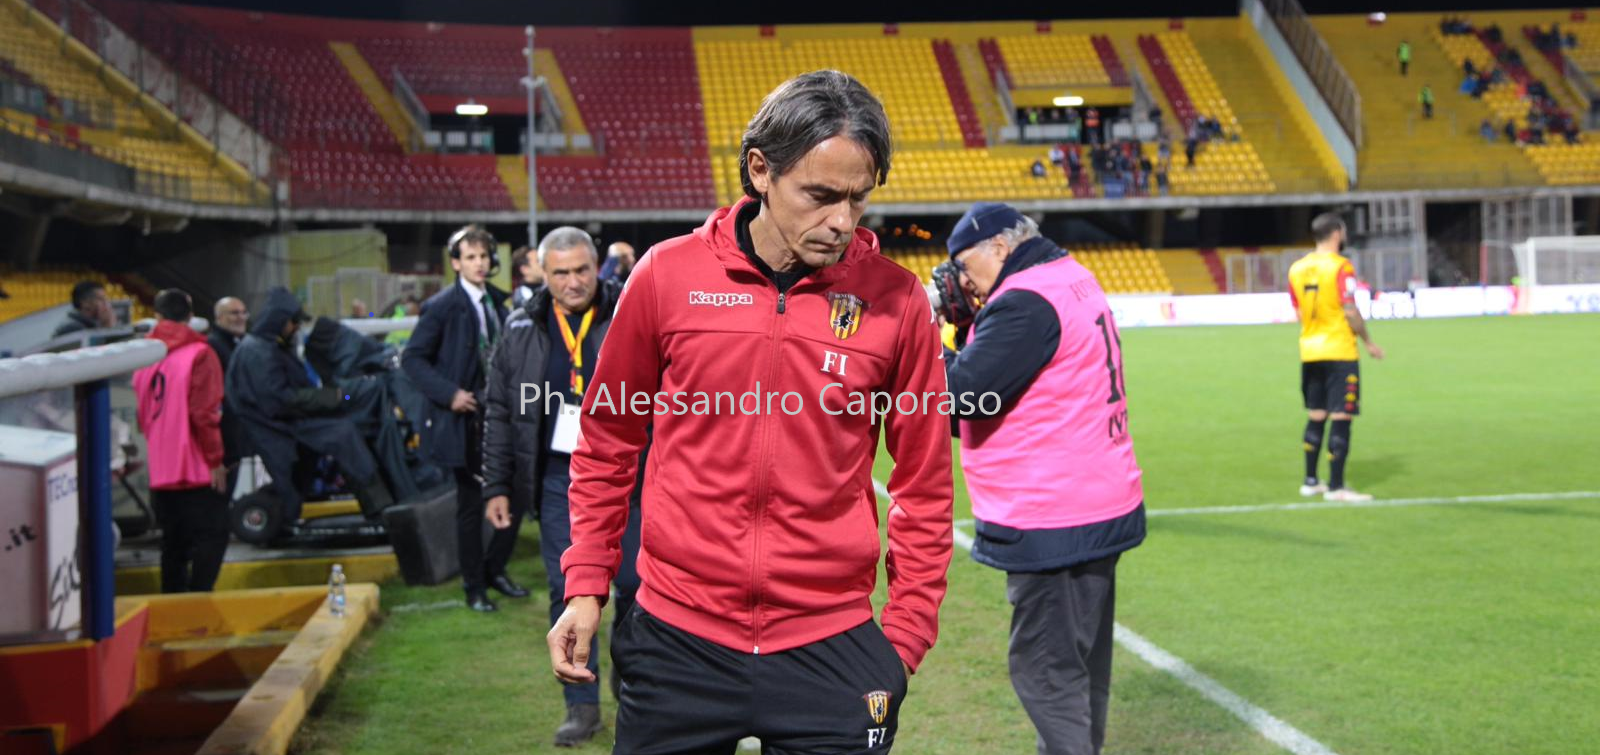 Inzaghi a Sky Sport24: “La Serie A complicata ma con degli aggiustamenti possiamo dire la nostra”